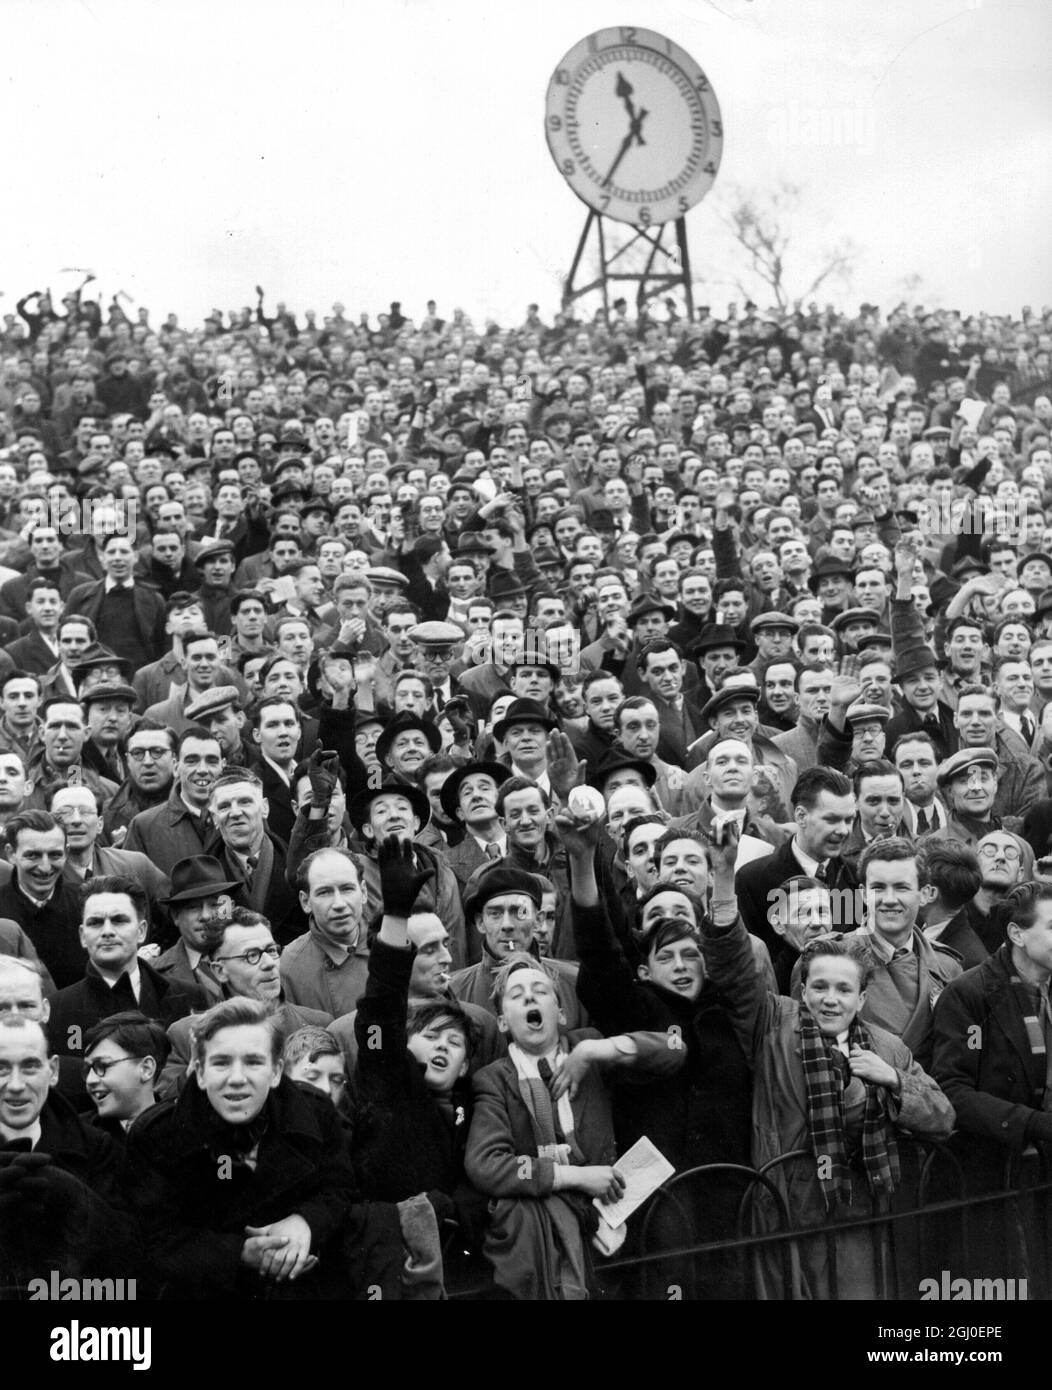 Szenen bilden das Highbury Stadium, kurz nachdem die Tore geöffnet wurden, um die Tausende, die alle umliegenden Straßen für die dritte Runde der Pokalrunde eingepackt hatten, zwischen Arsenal und Spurs zu binden. Januar 1949. Stockfoto